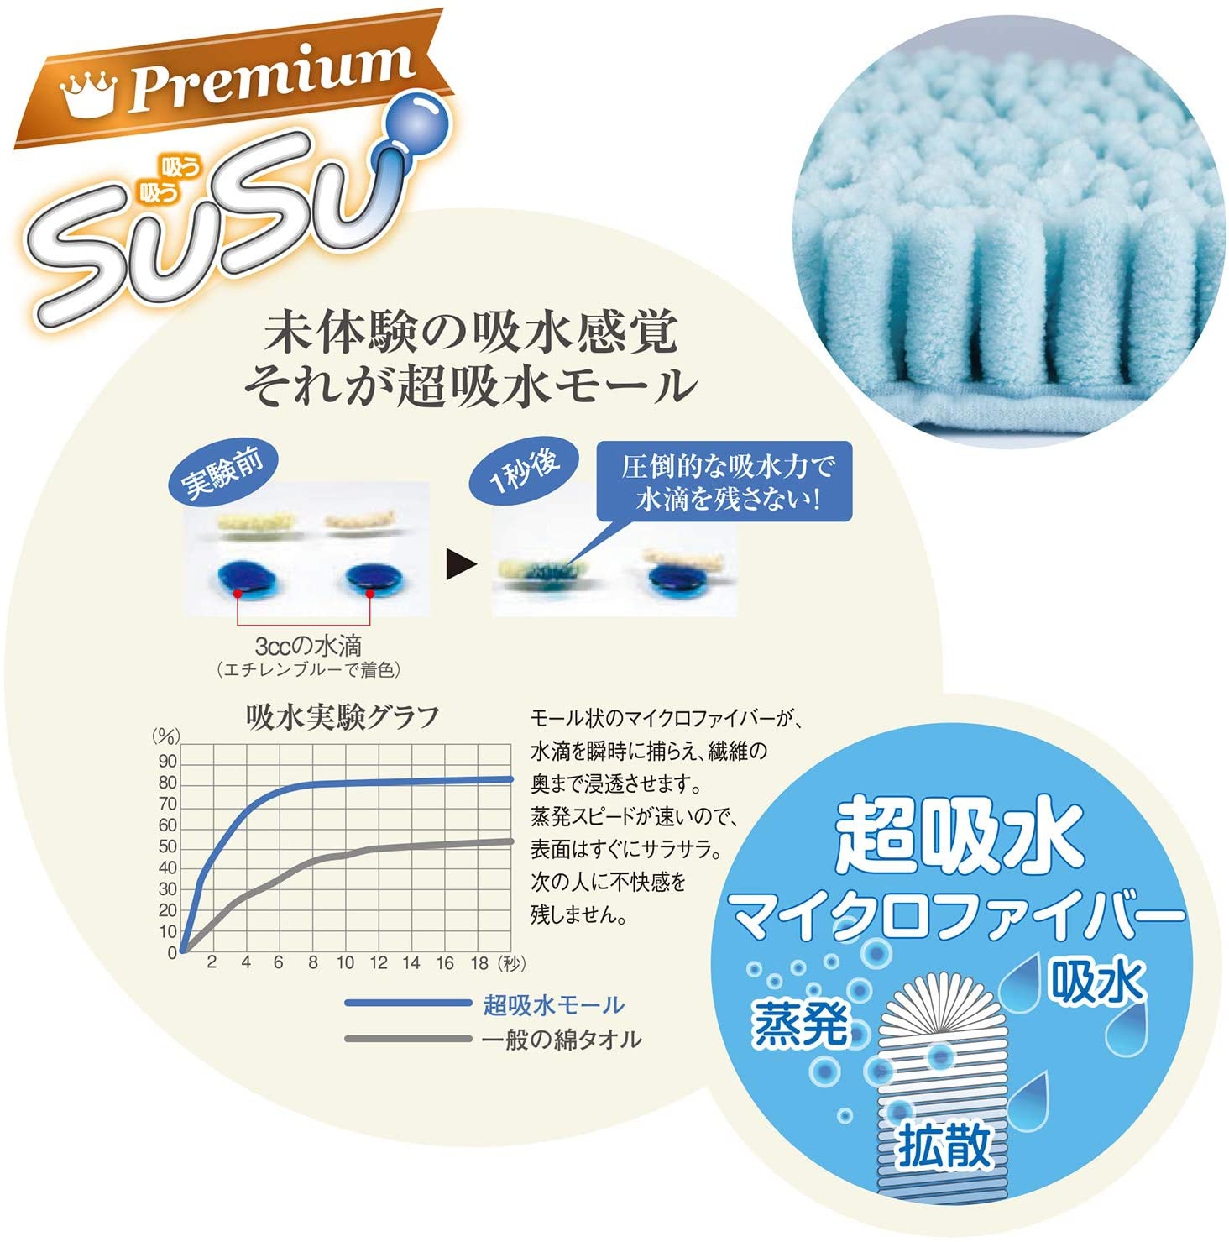 吸う吸う(SUSU) Premium ふわもこセレブの商品画像サムネ6 